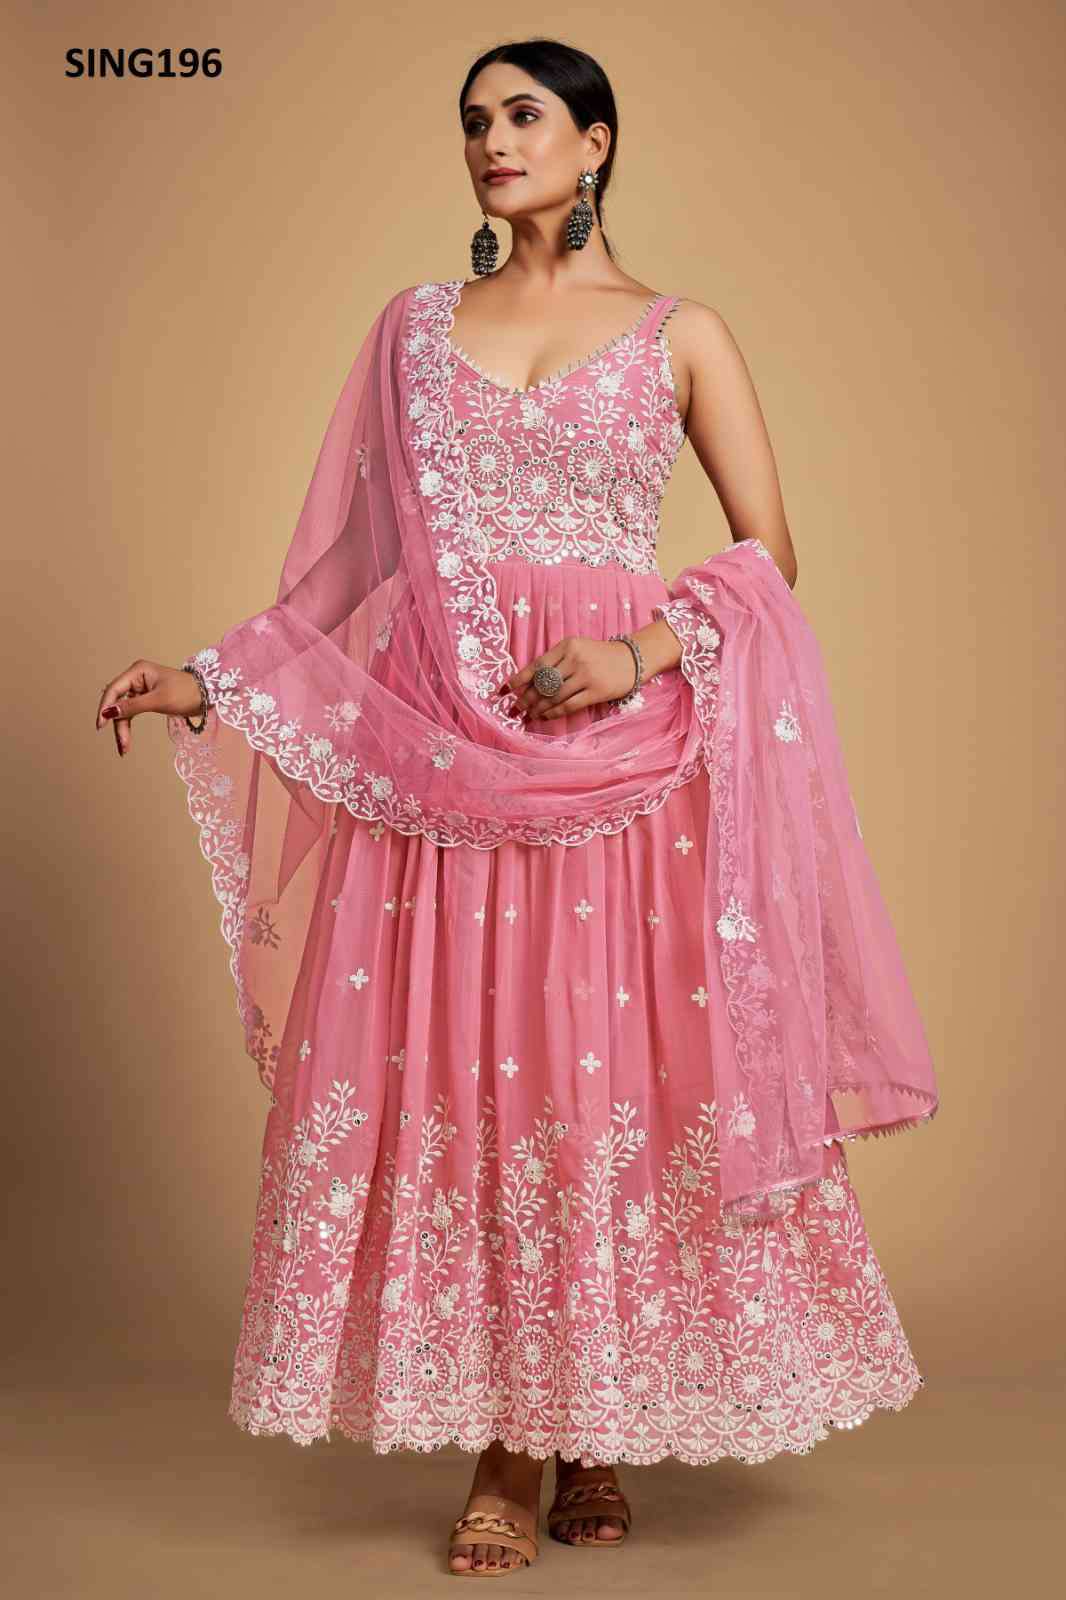 Arya Designs Sing196 Partywear Pink Anarkali Dress Supplier